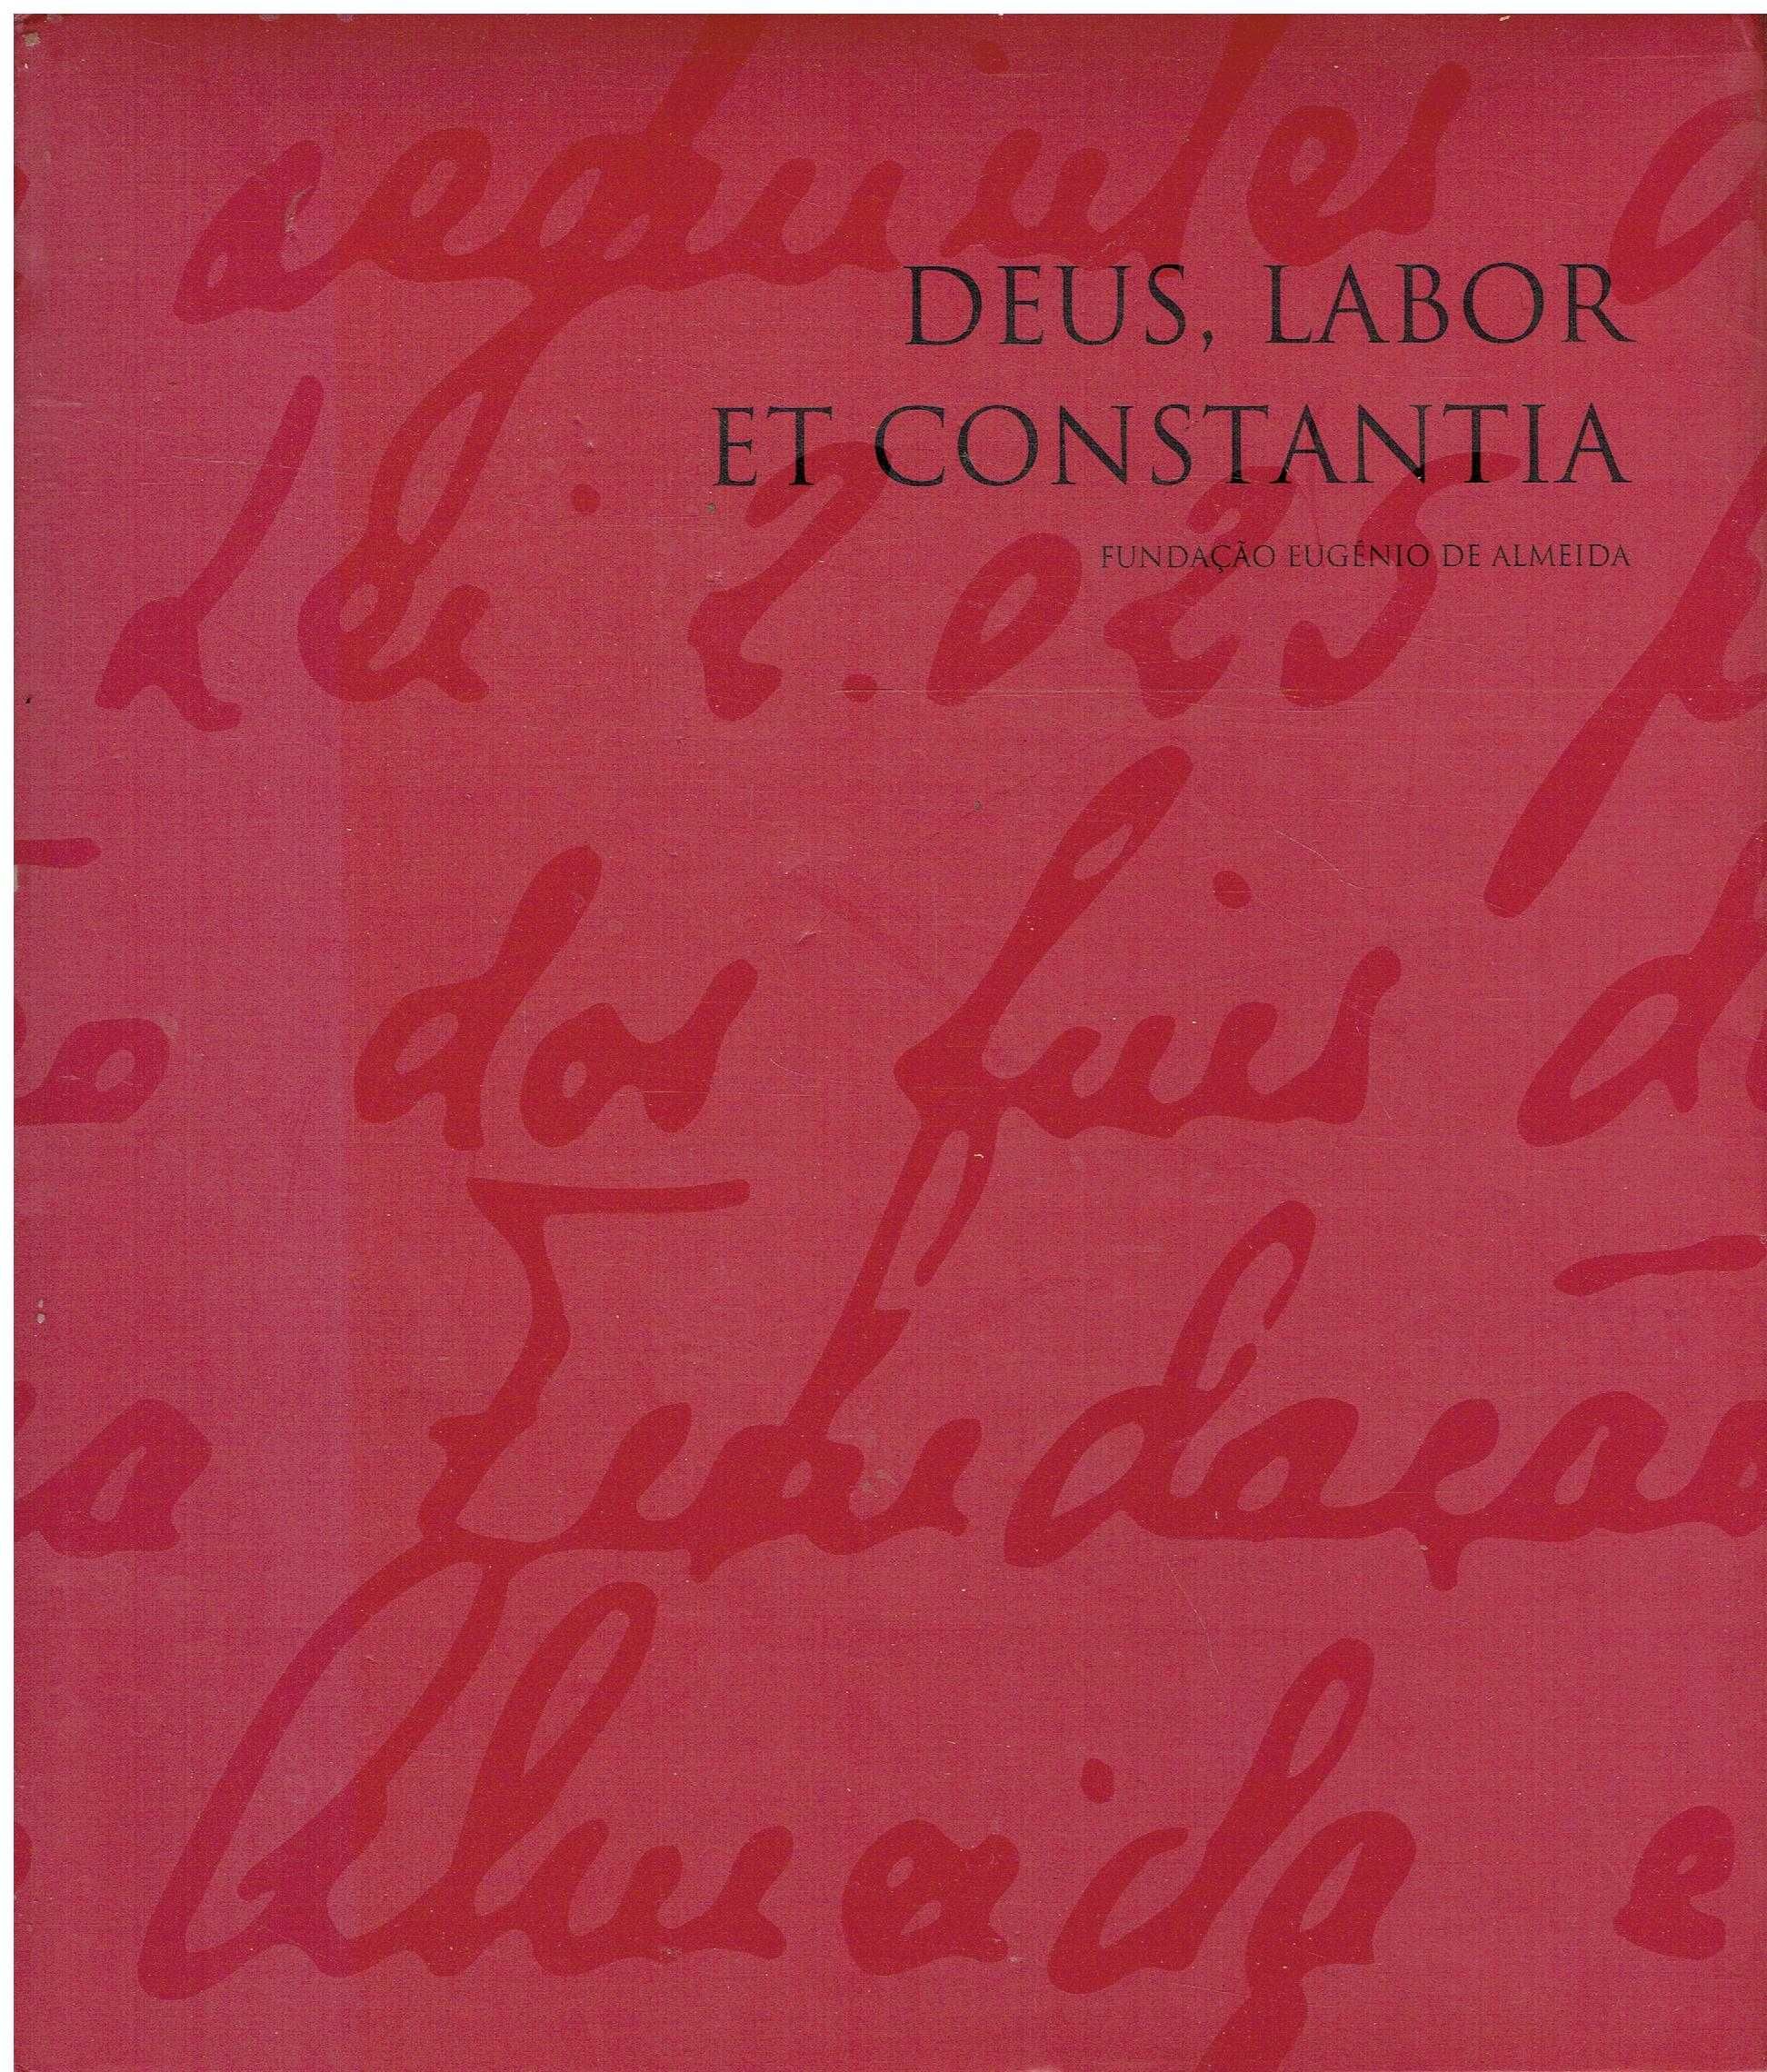 7236

Deus, Labor et Constantia - Fundação Eugénio de Almeida